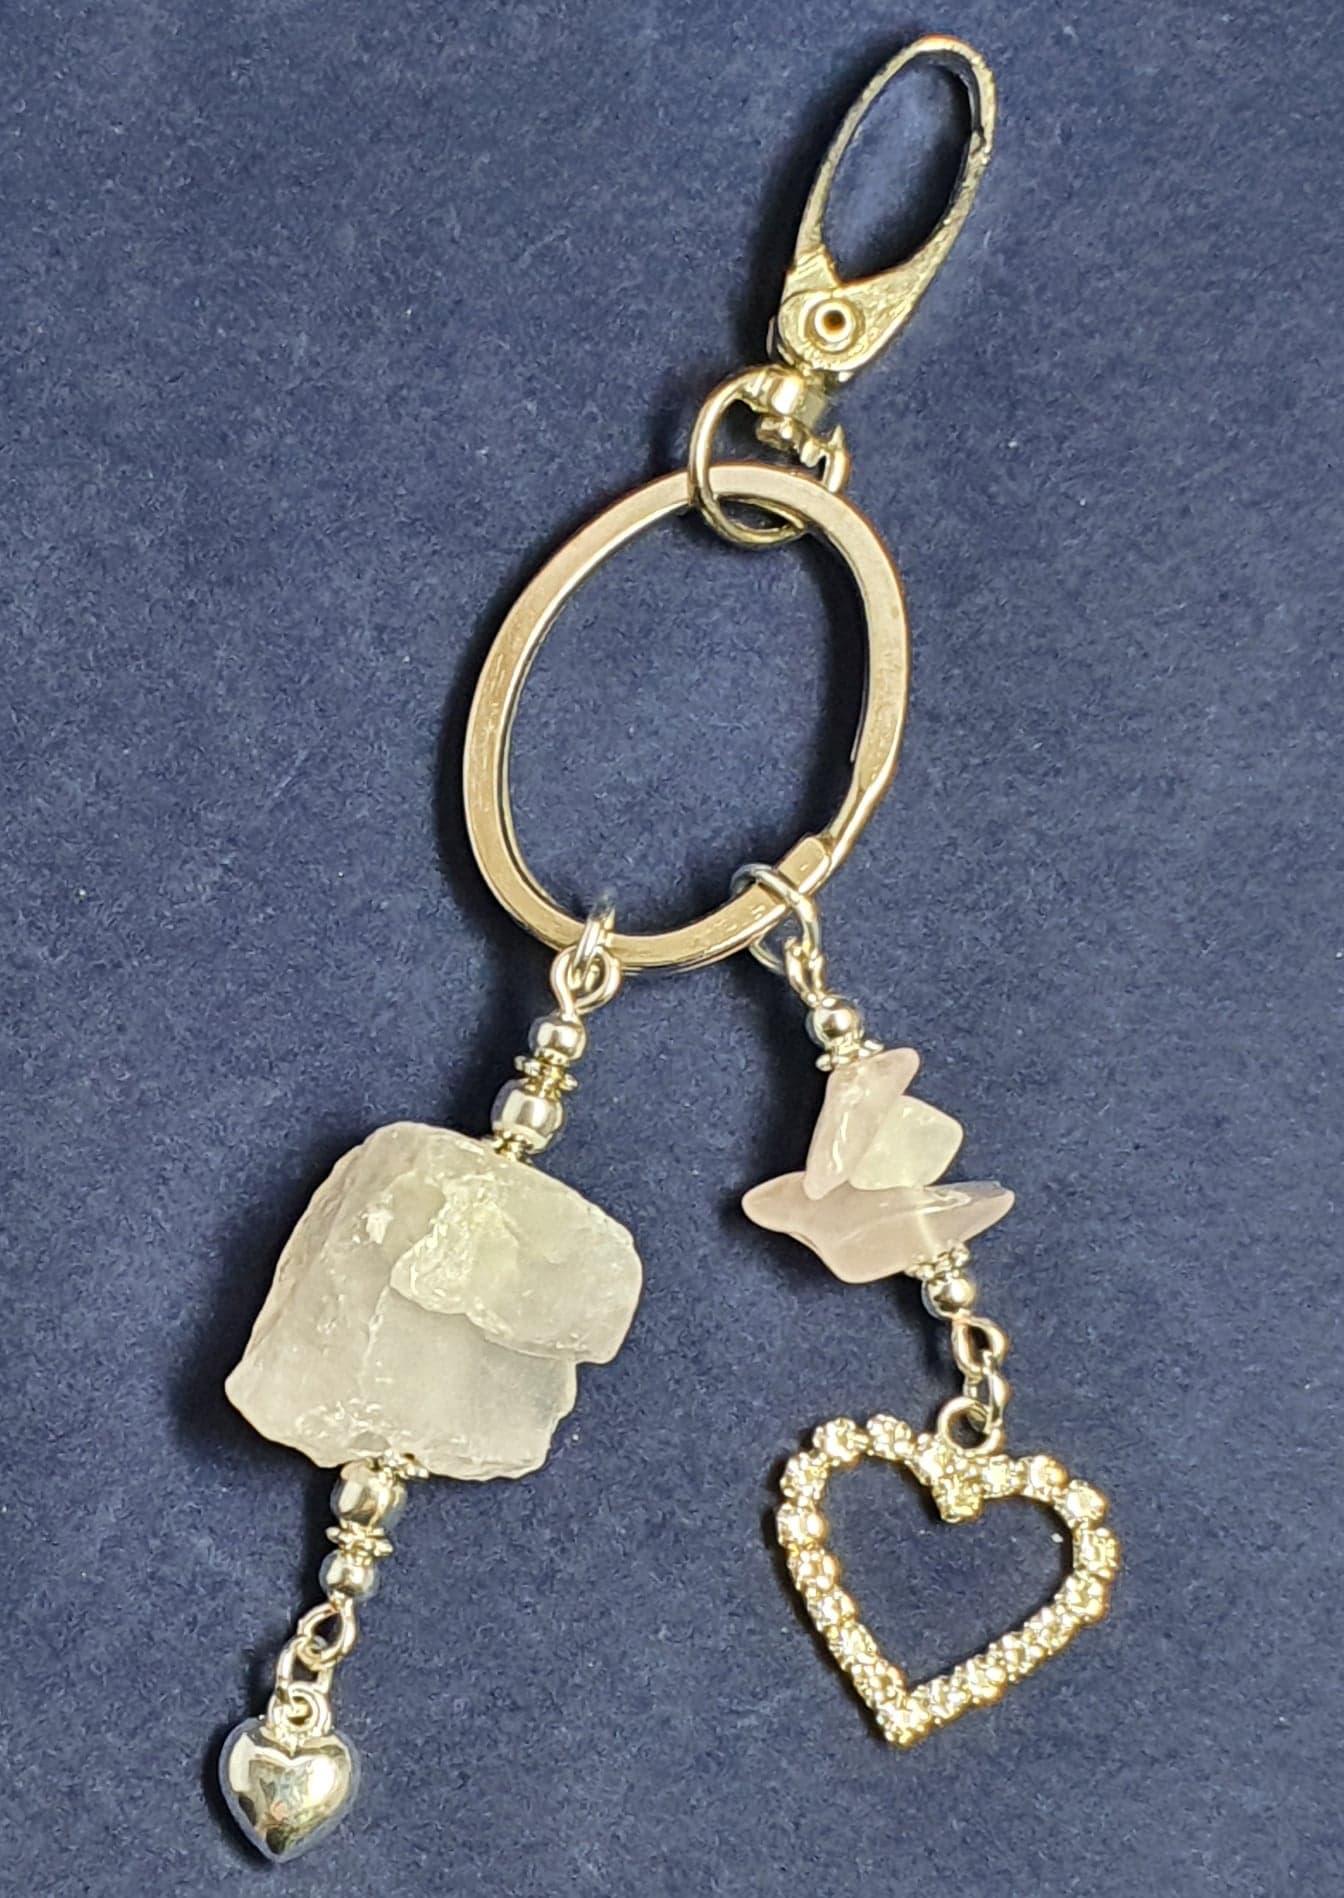 Rose Quartz nugget key ring with rhinestone heart Key ring / bag charm